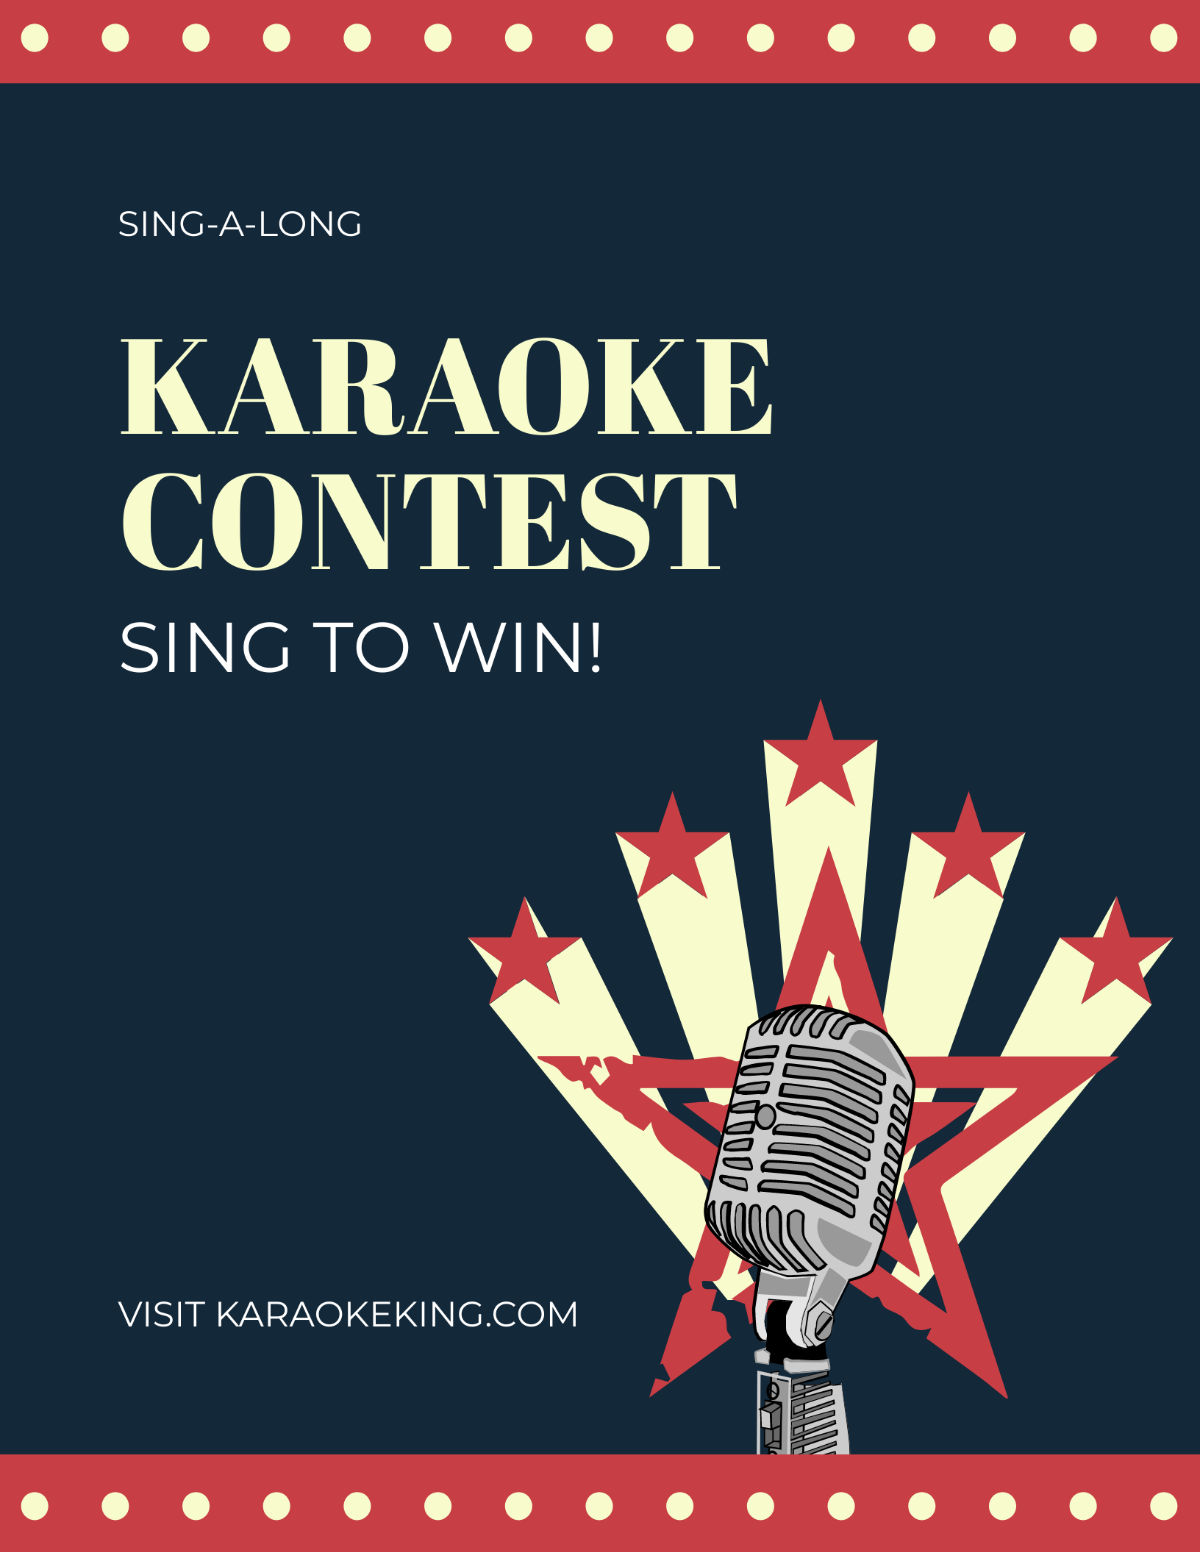 Free Karaoke Contest Flyer Template